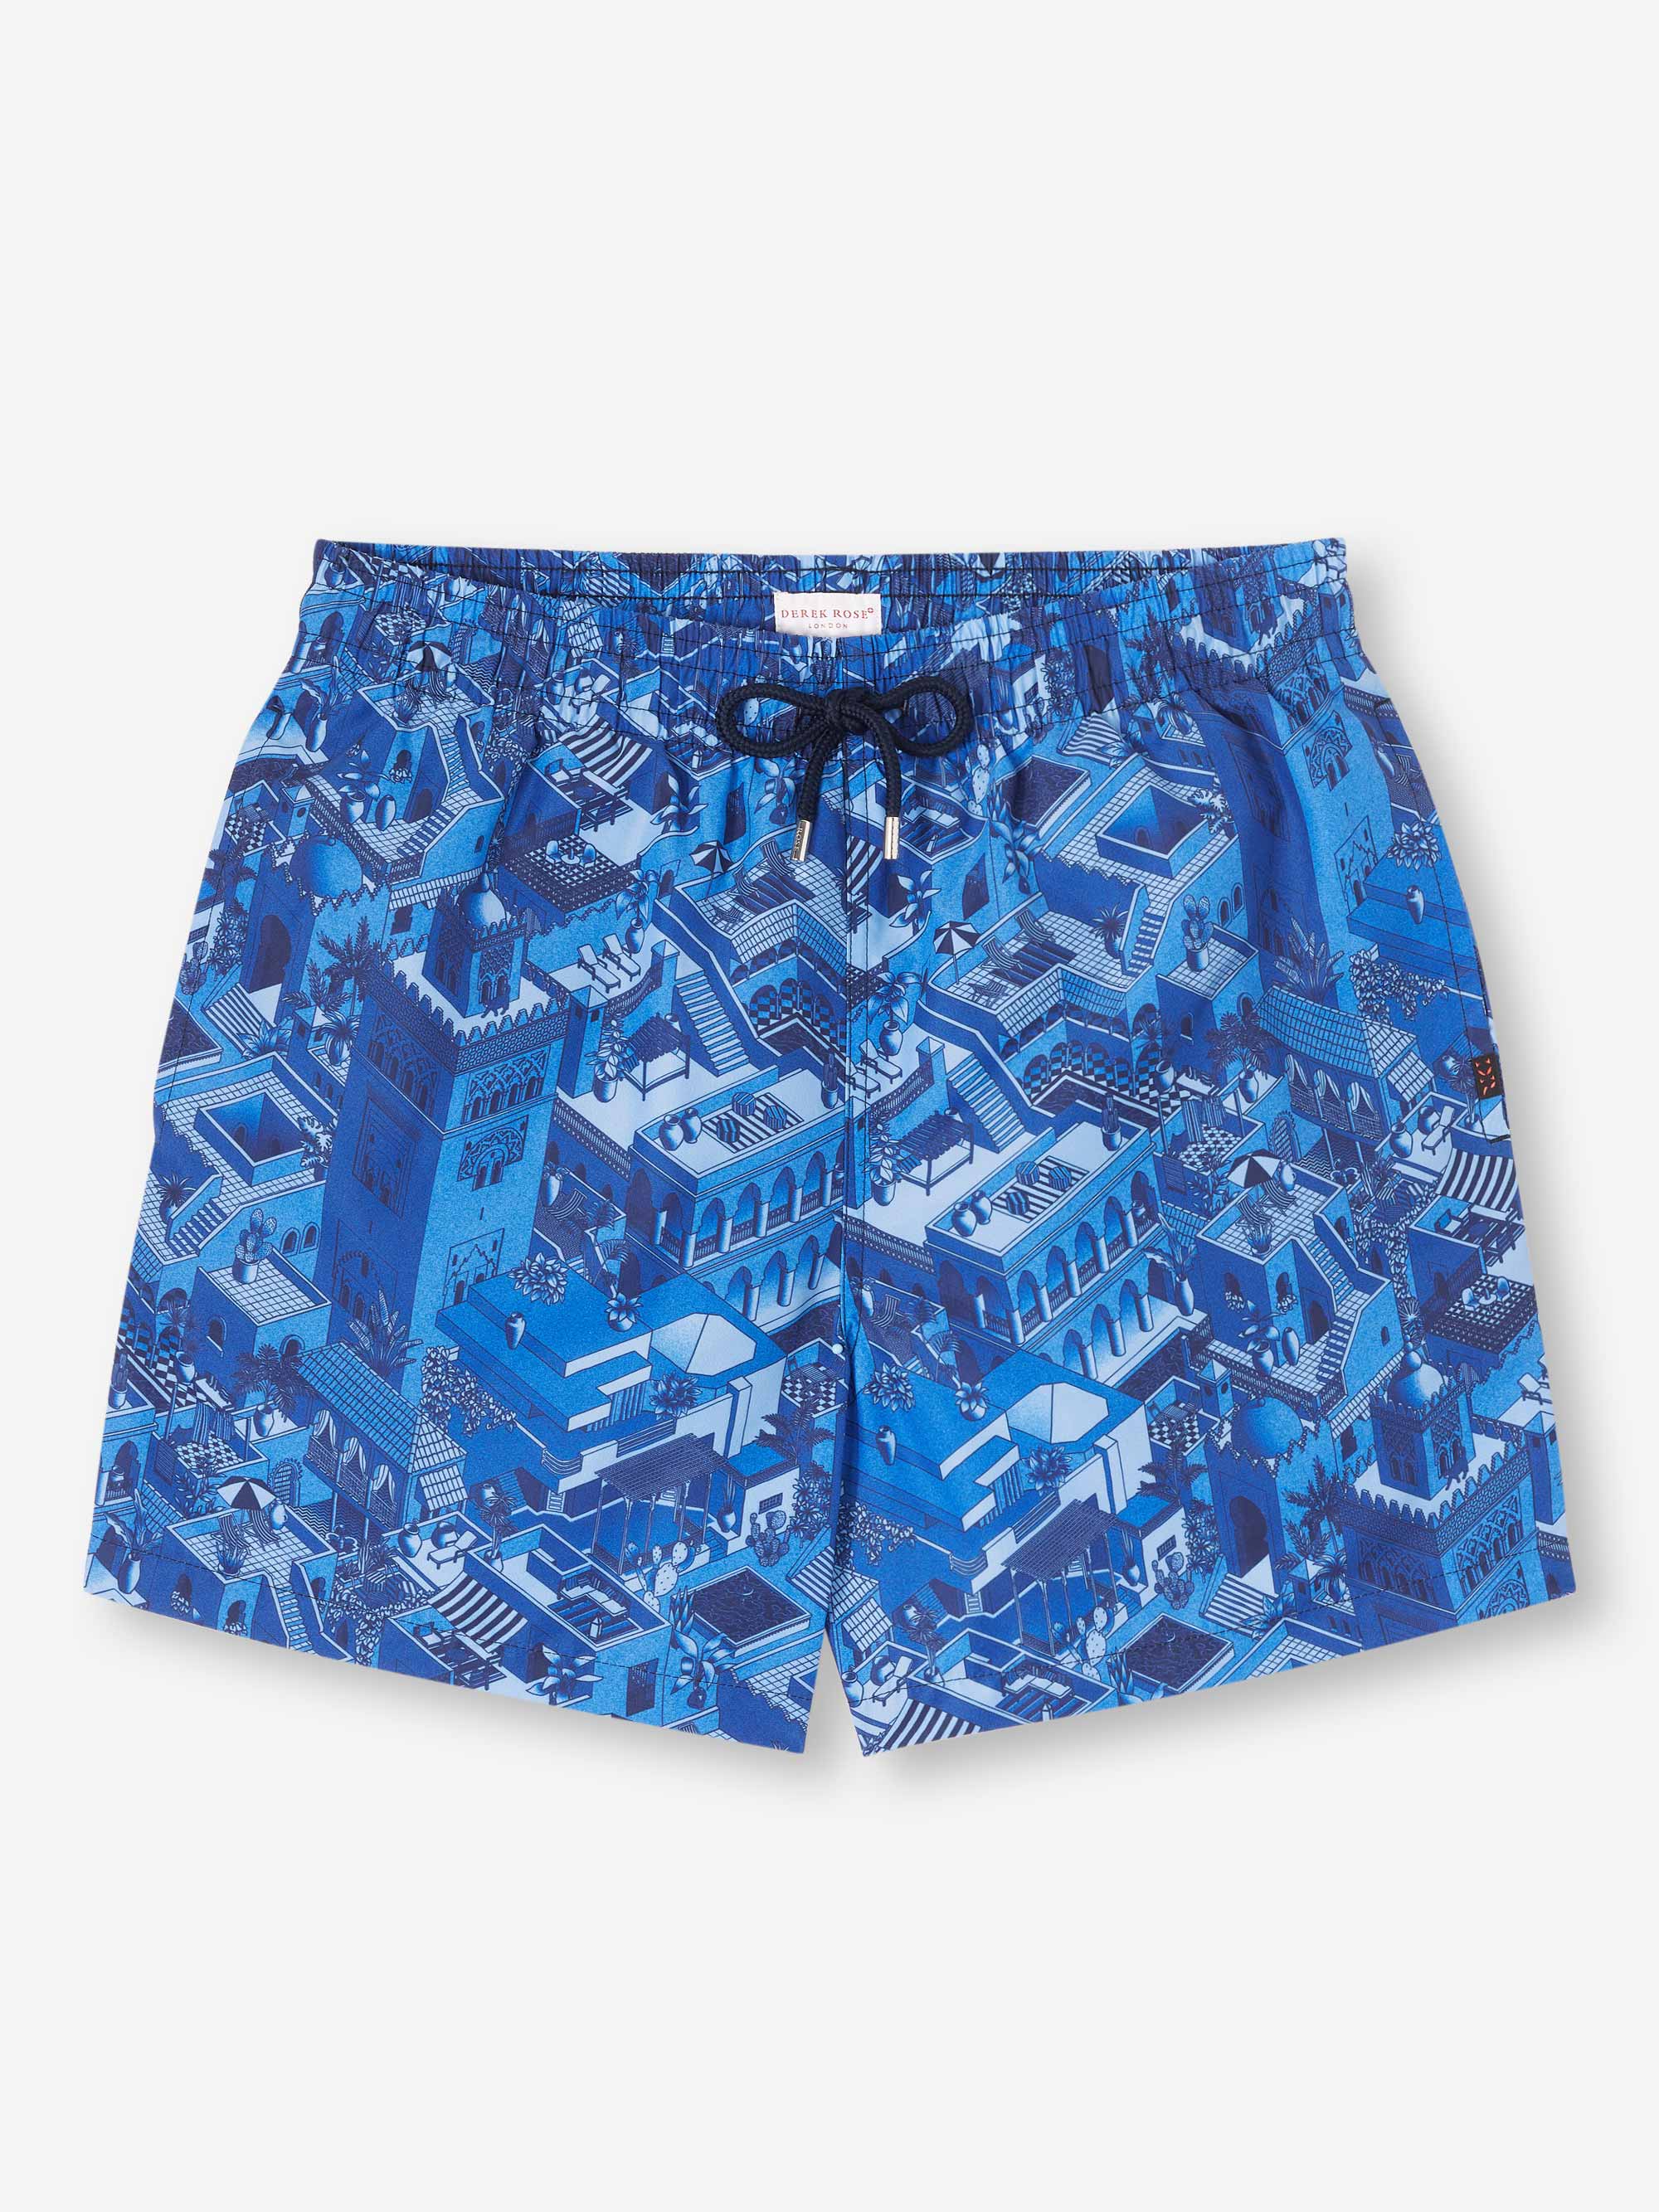 Men's Short Swim Shorts Maui 60 Blue